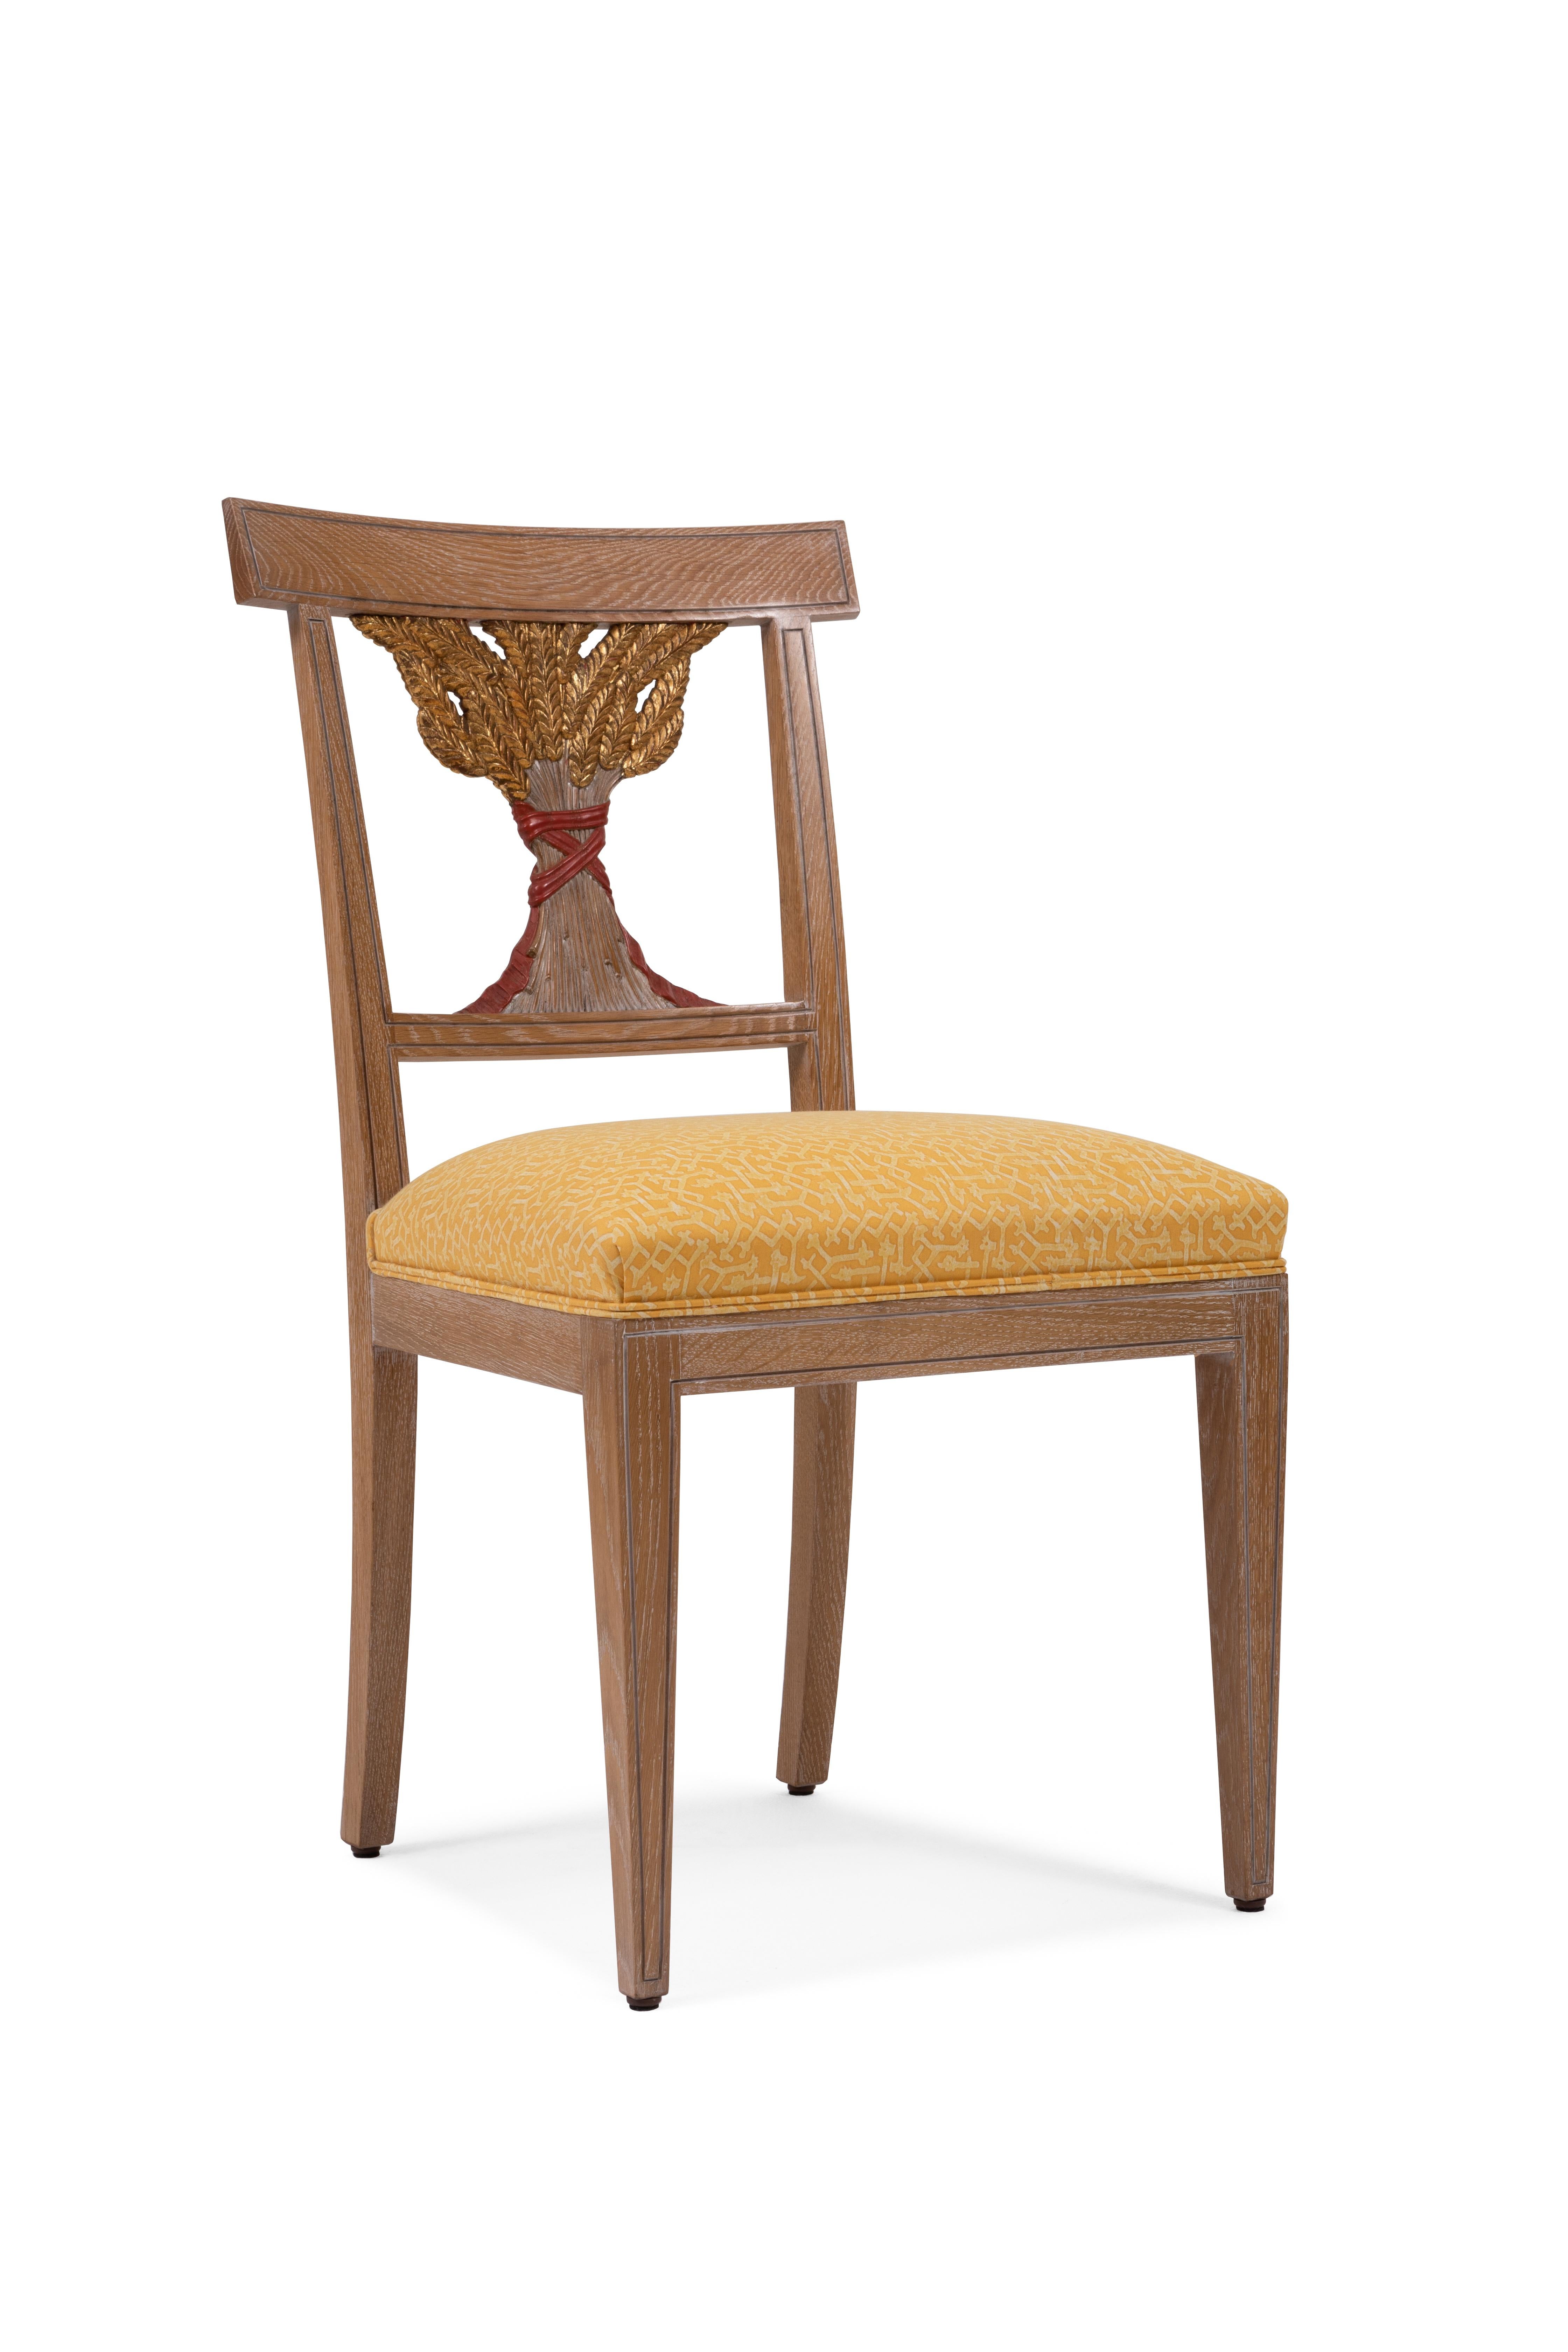 Chaise en bois de chêne, avec épis de blé décoratifs sculptés à la main sur le dossier et le contre-dossier. Ce fauteuil s'inspire du style de l'Empire russe ( zar Nicola II ).
Parfait pour la salle à manger, il est personnalisable. Les épis de blé